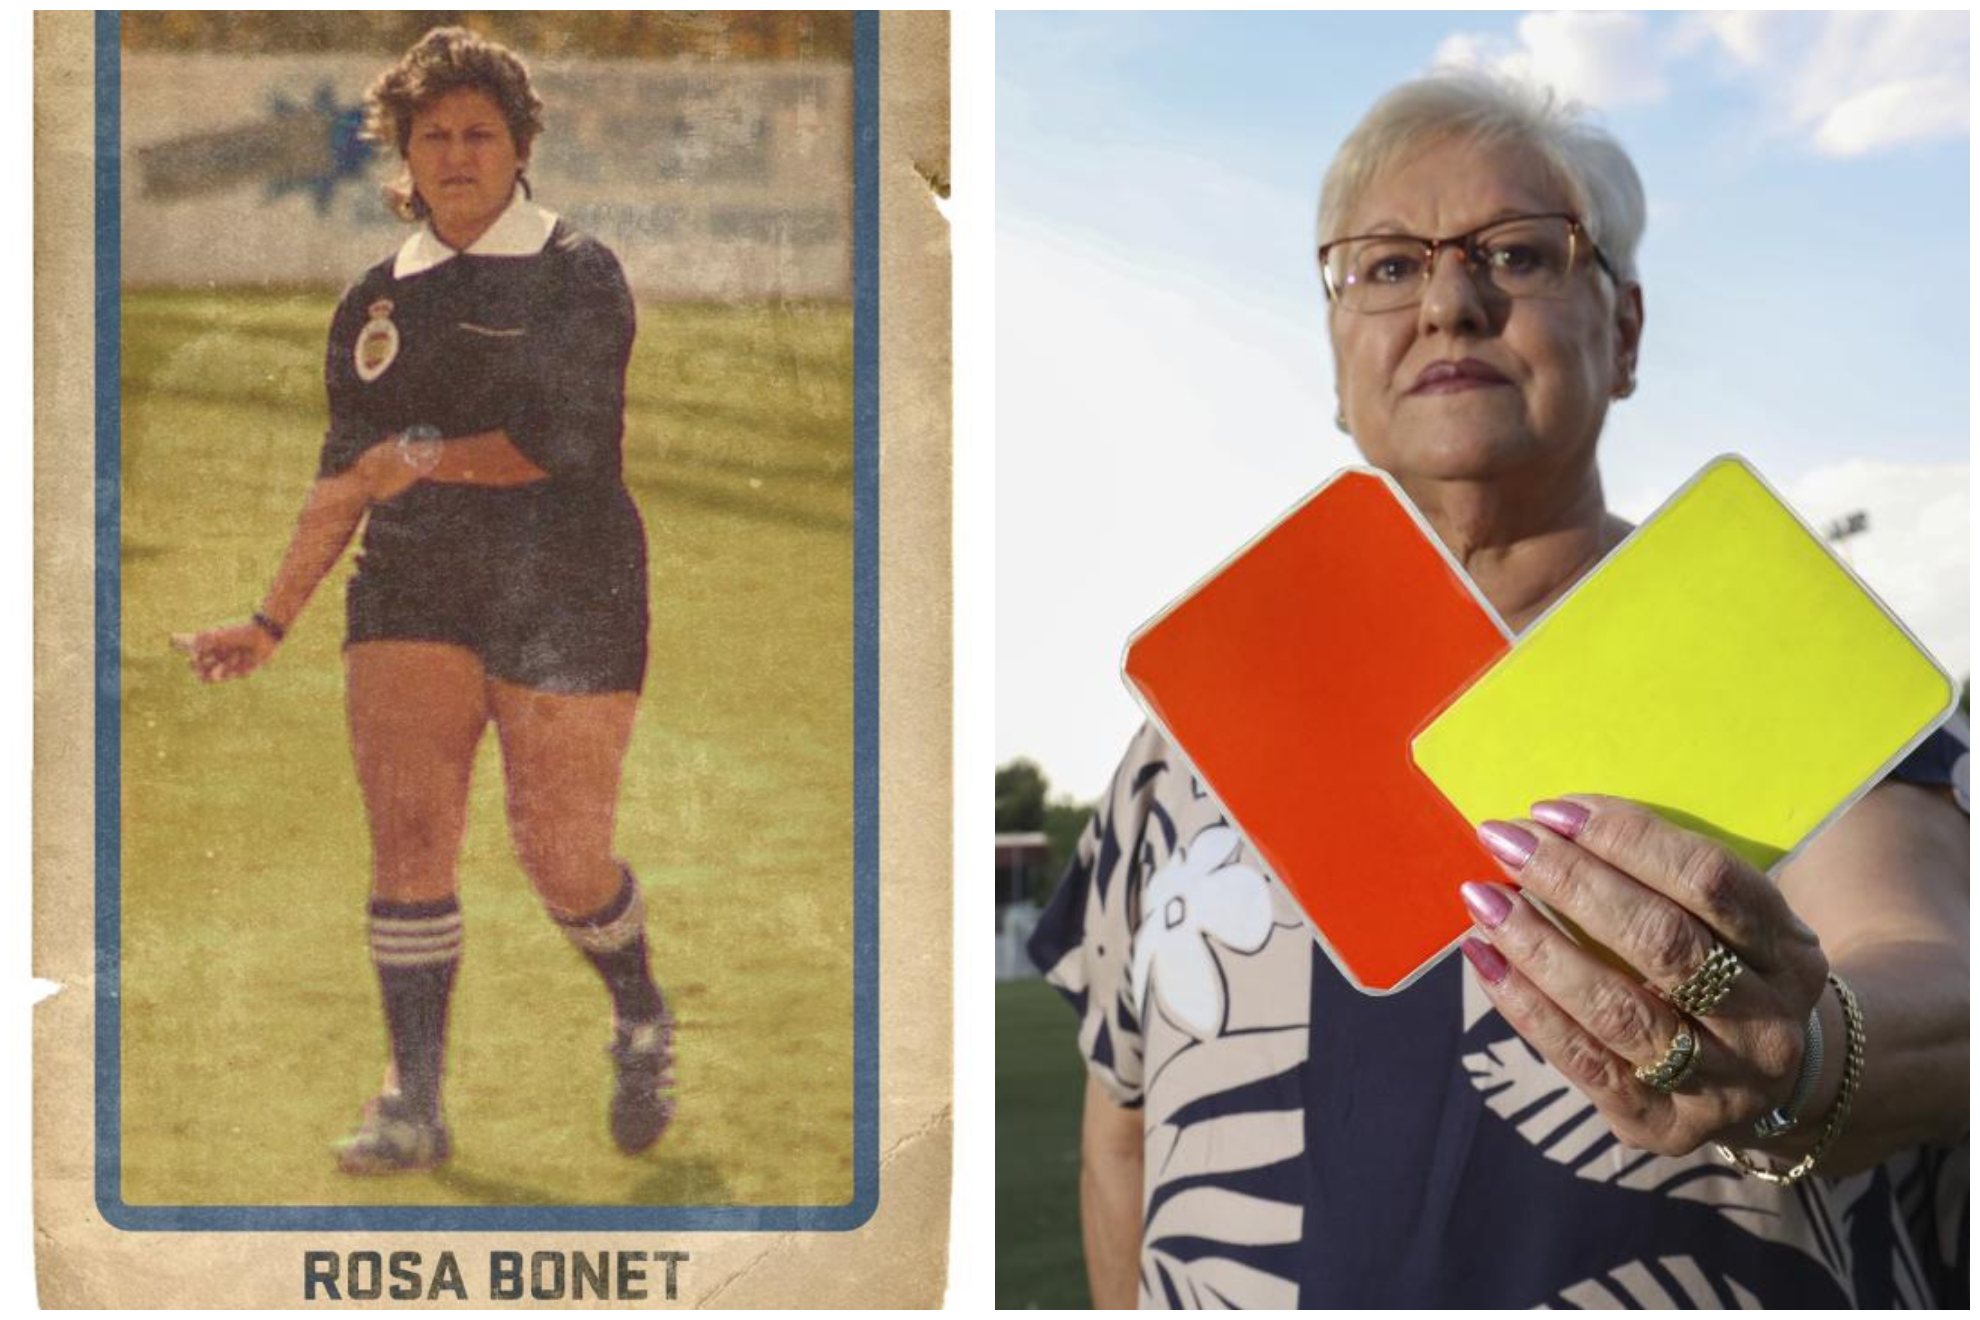 La respuesta a Rosa Bonet cuando fue a informarse para ser árbitra: "A los árbitros les pegan, a lo mejor a ti te violan"